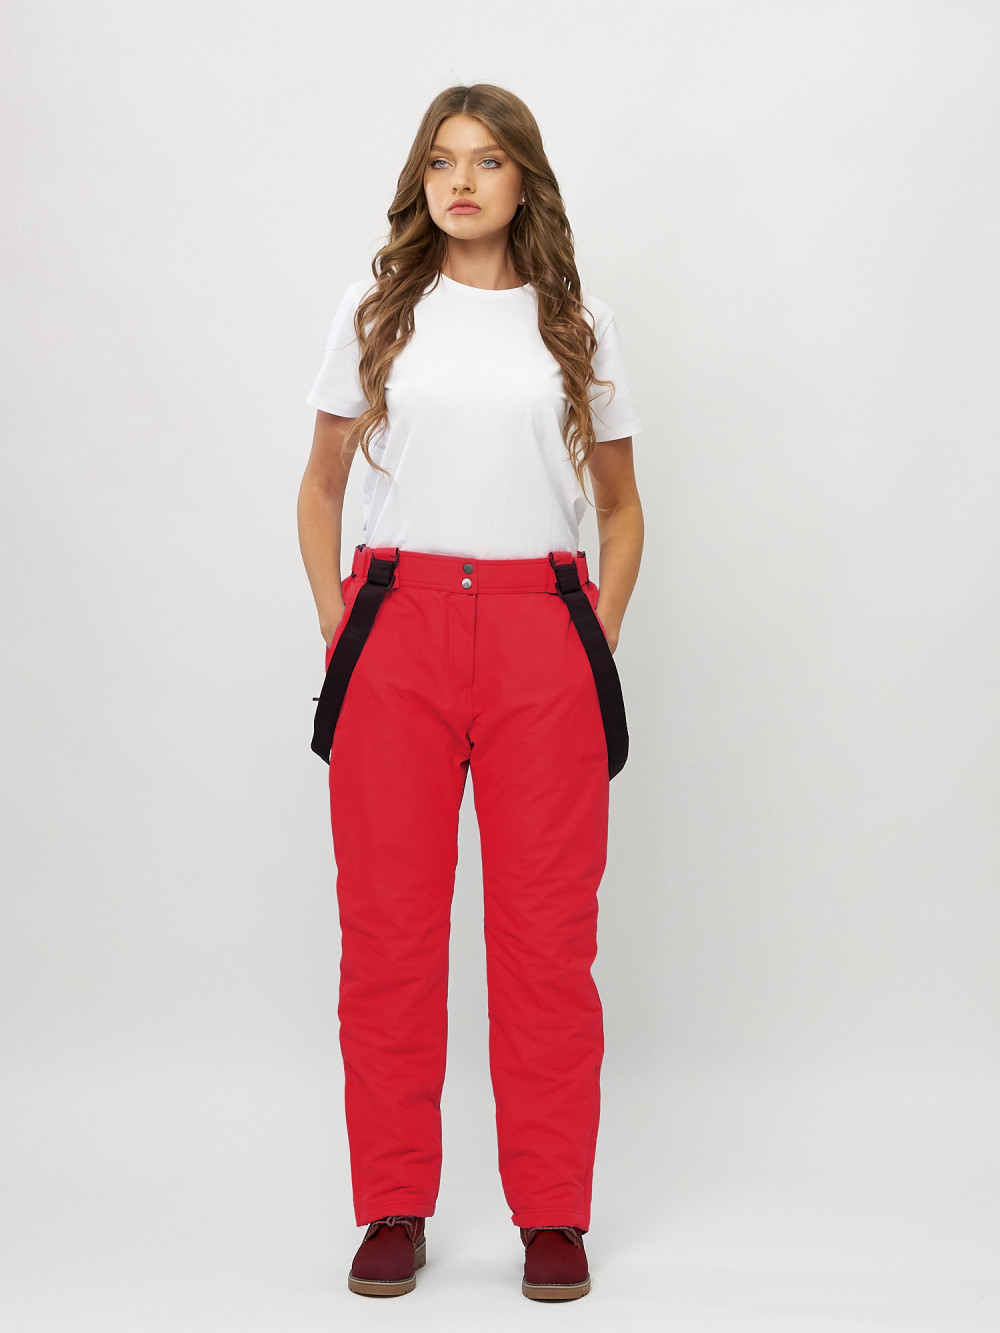 Купить оптом Полукомбинезон брюки горнолыжные женские big size красного цвета 66413Kr в Казани